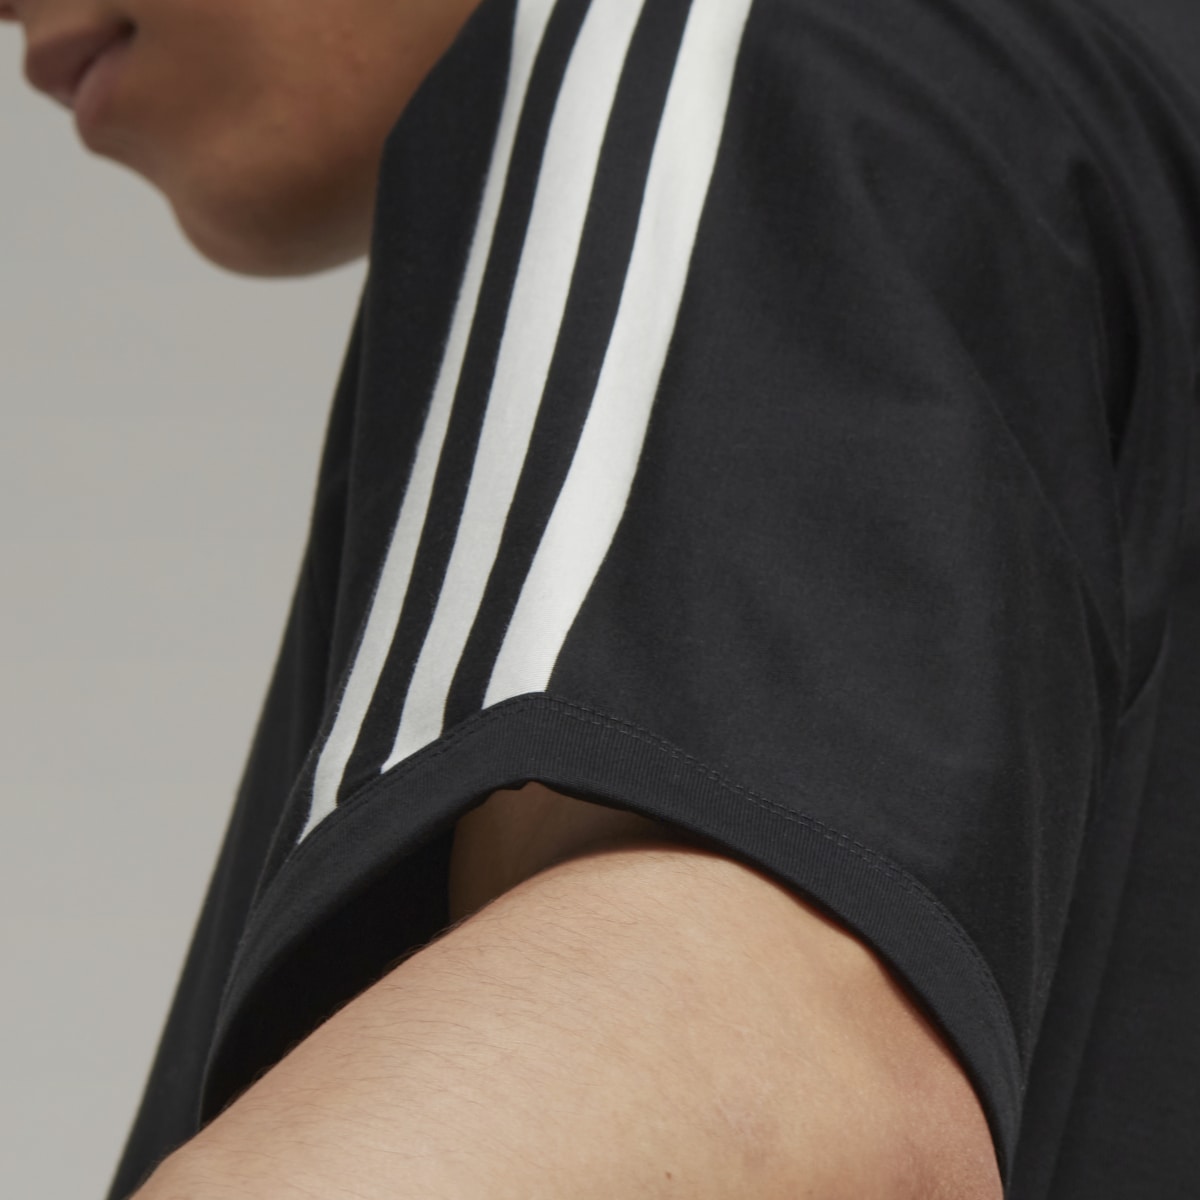 Adidas T-shirt 3-Stripes Y-3. 8